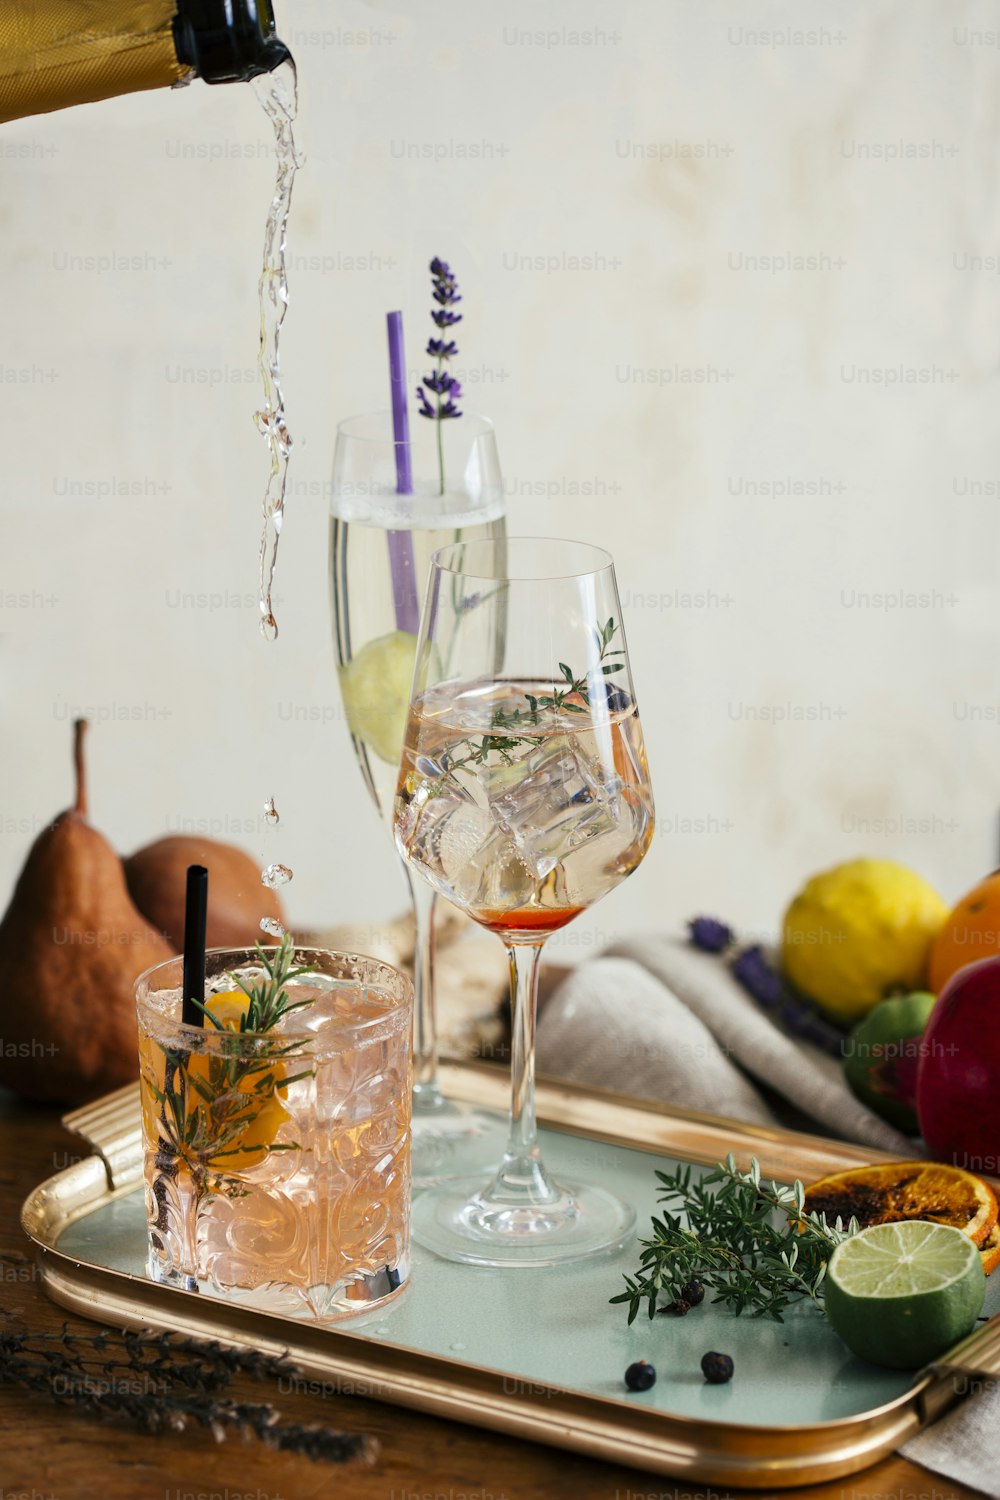 Cocktail de Prosecco, apéritif avec Prosecco, un vin blanc mousseux italien, amer, thym et baies de genièvre ; Prosecco, citron vert et lavande ; et Prosecco, orange et romarin